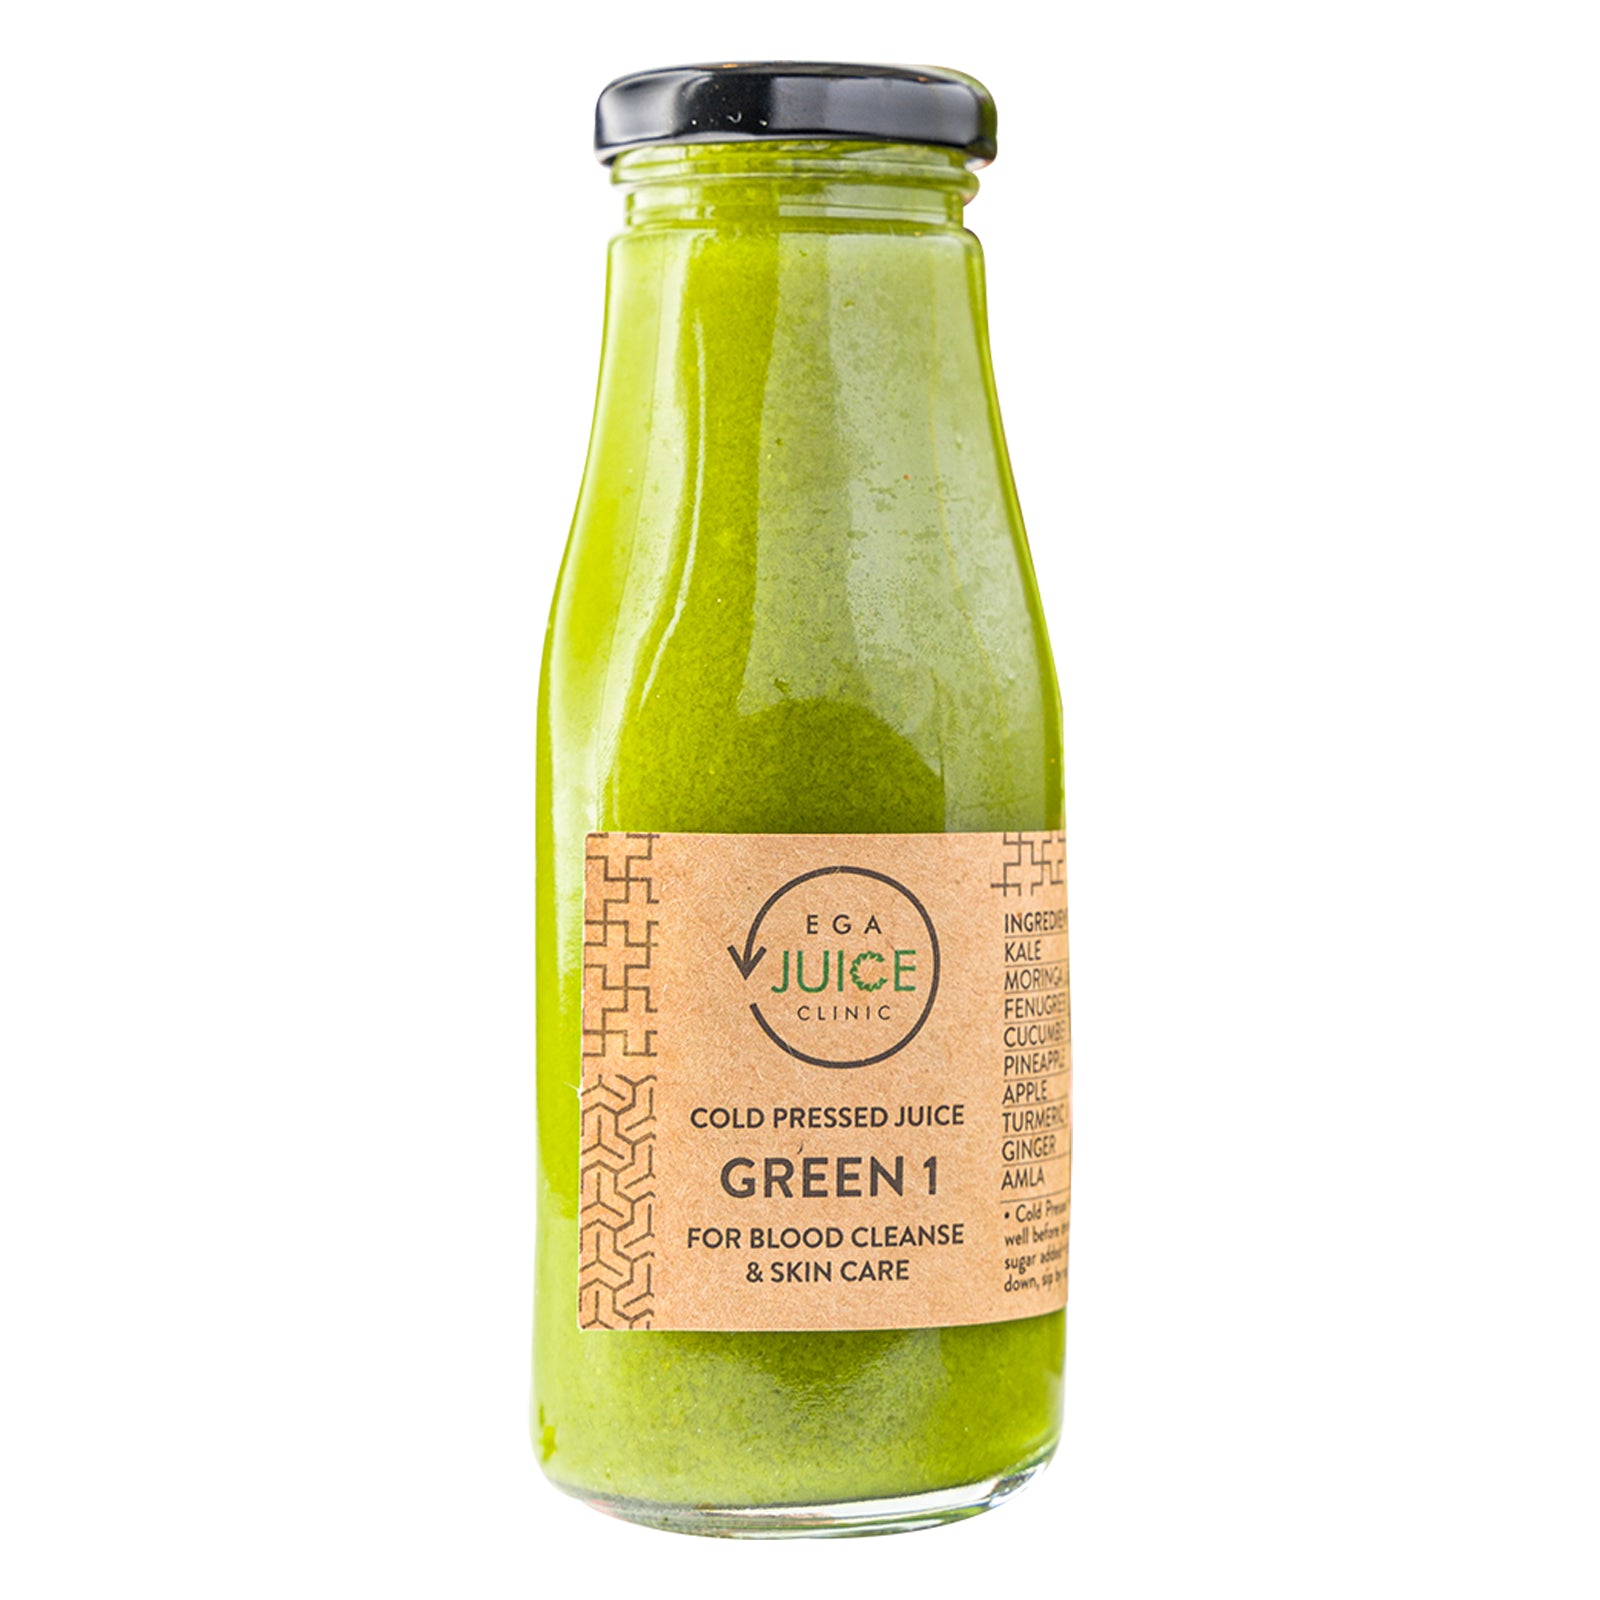 Green 1 Juice Bottle